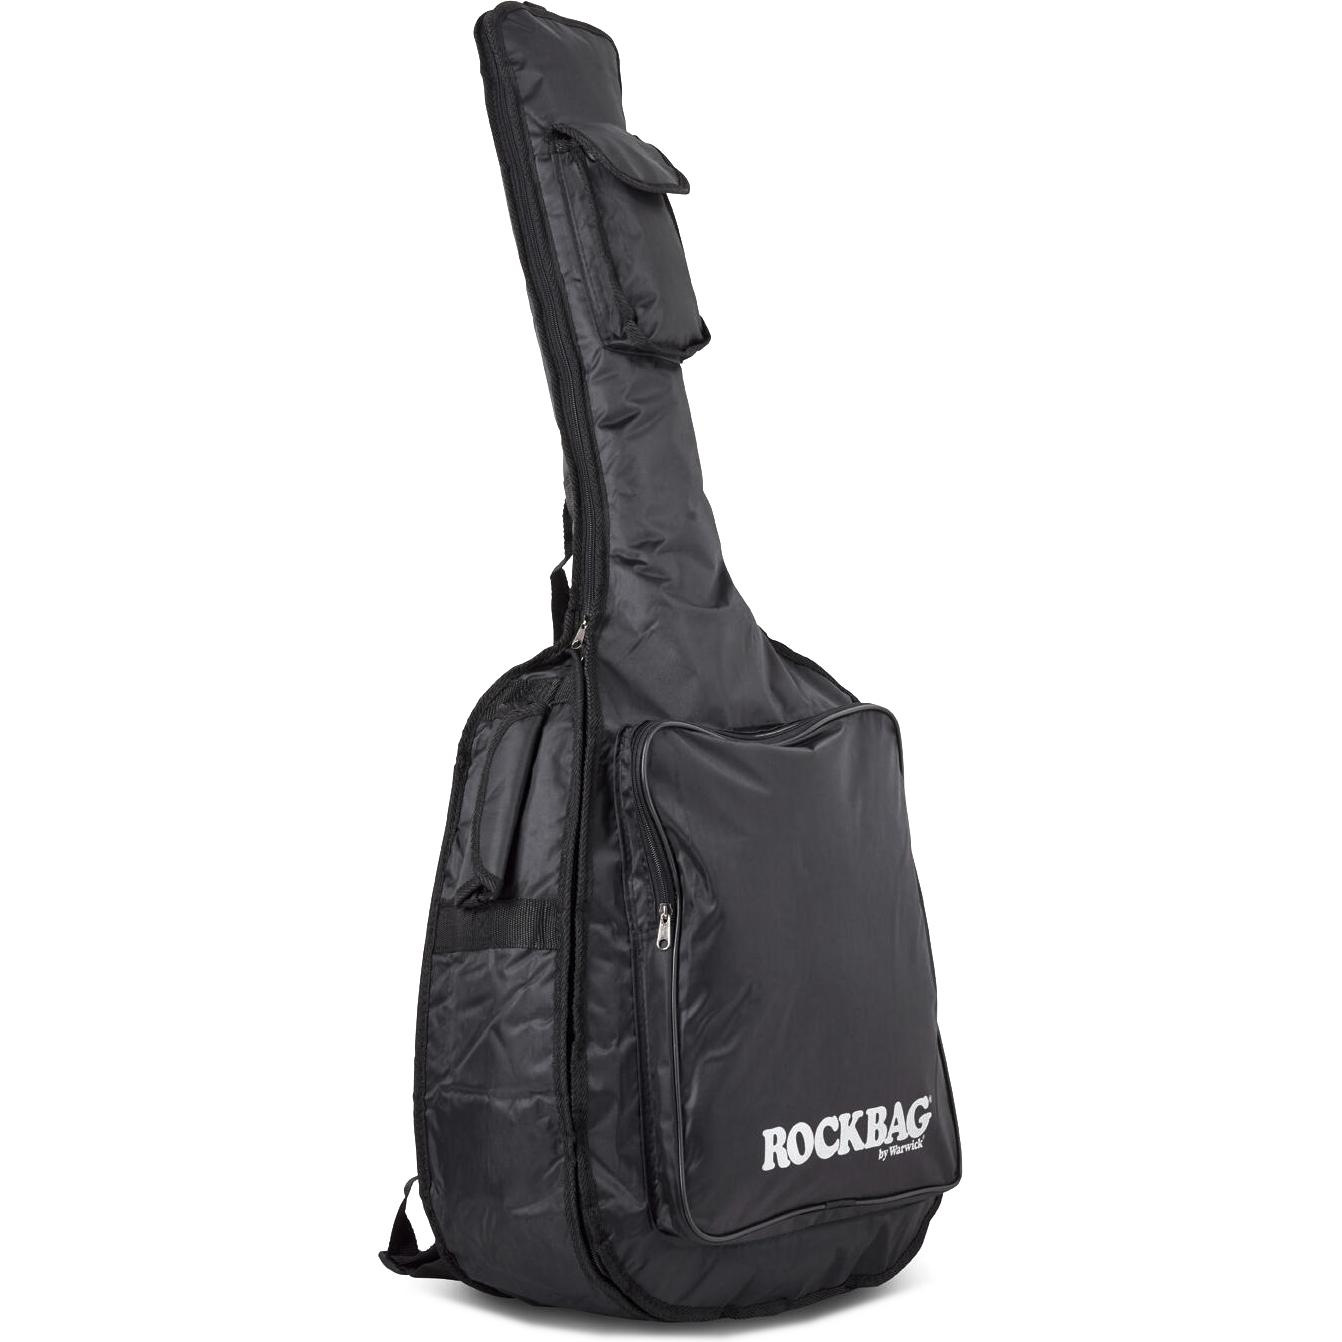 Чехол для акустической гитары Rockbag RB20529B, Rockbag (Рокбэг)